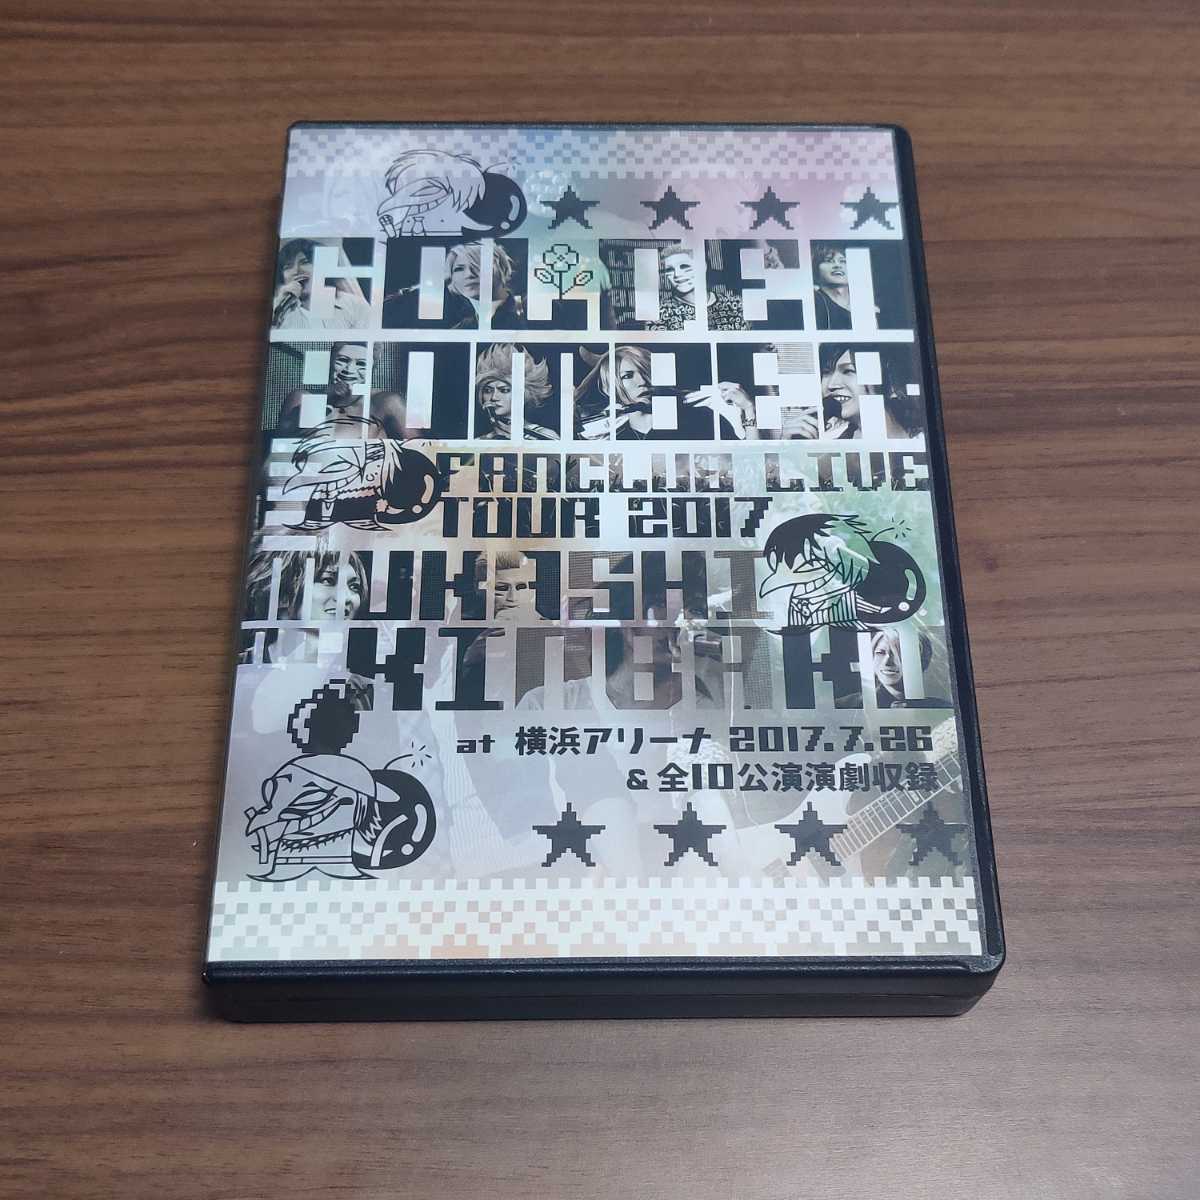 セール中 ゴールデンボンバー FCツアー DVD3枚セット ミュージック